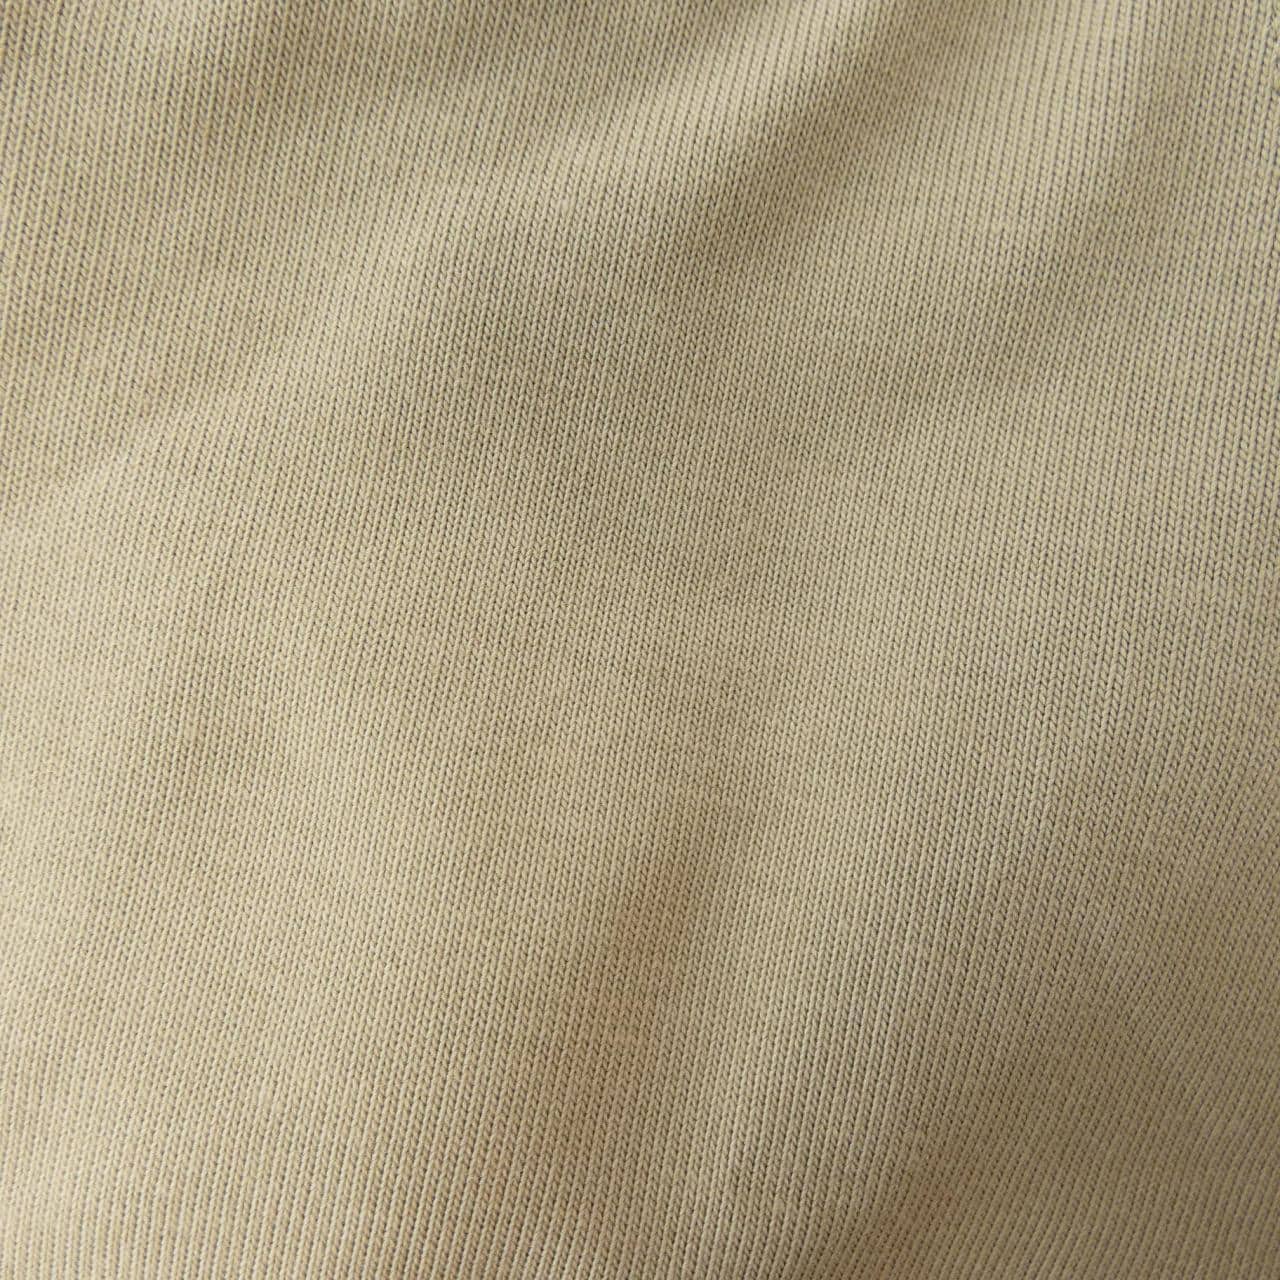 ナイキオフホワイト NIKE×OFF-WHITE Tシャツ